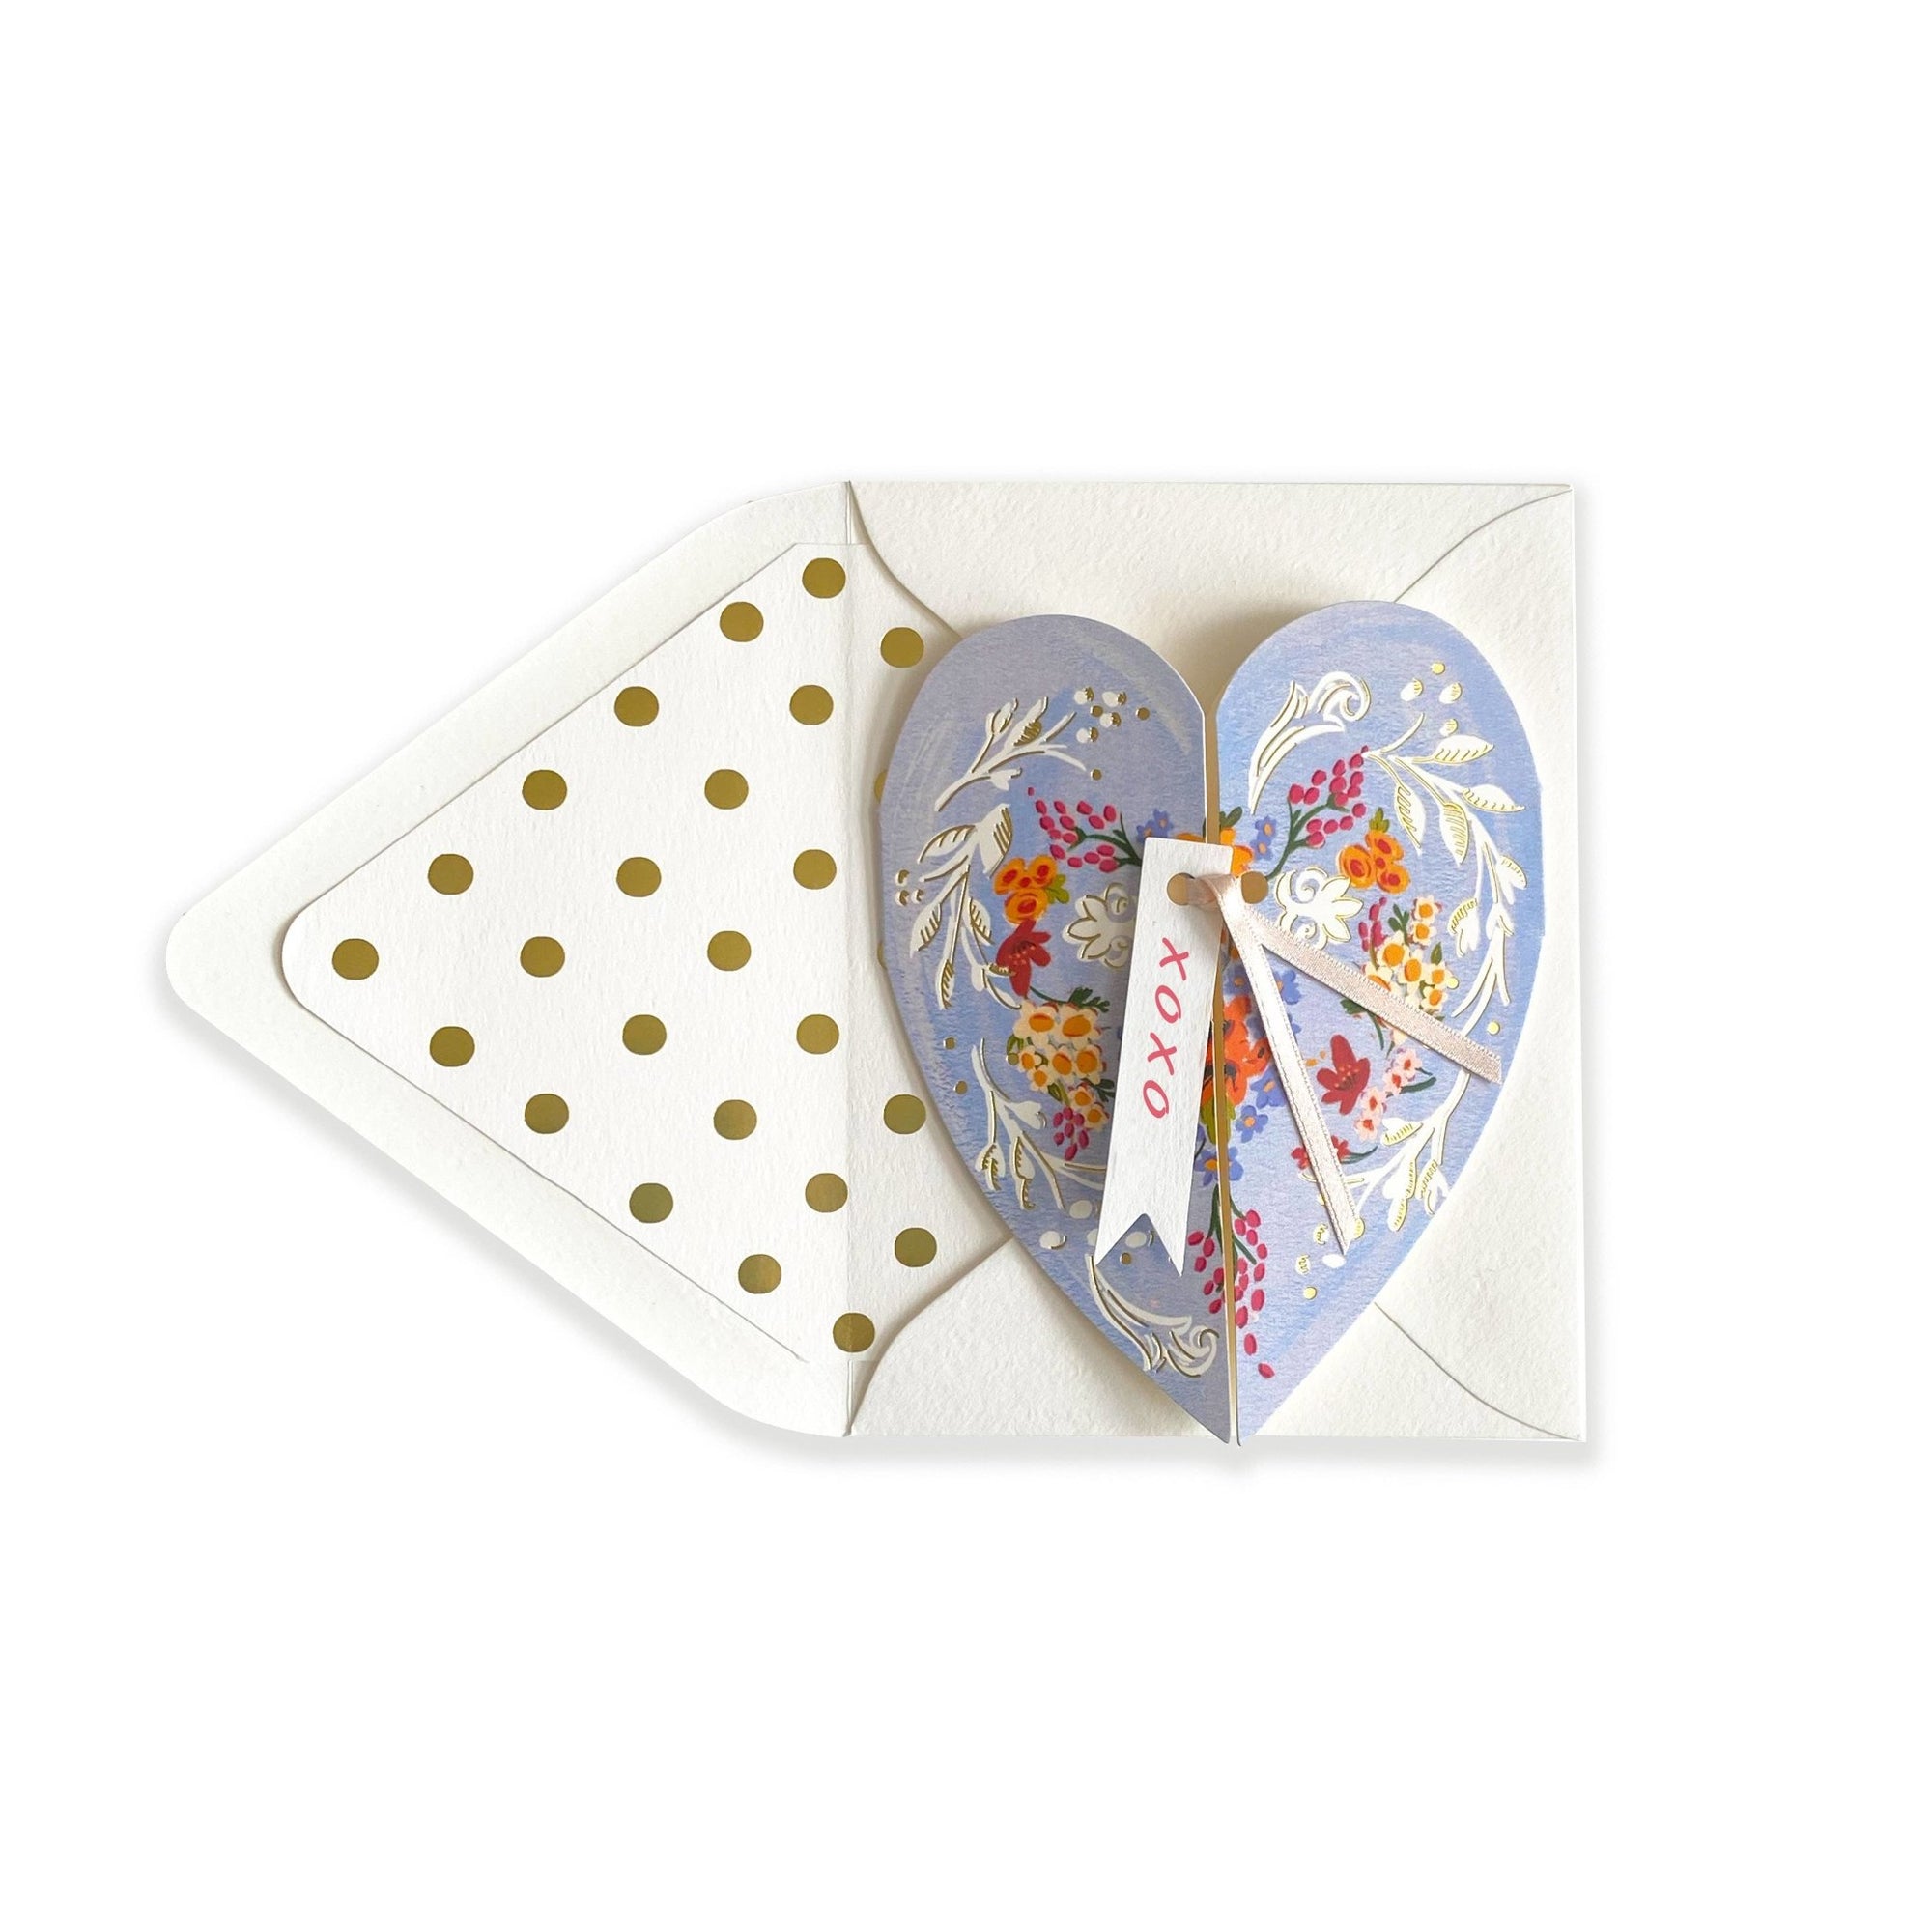 Love Greeting Card, XOXO - Abigail Fox Designs